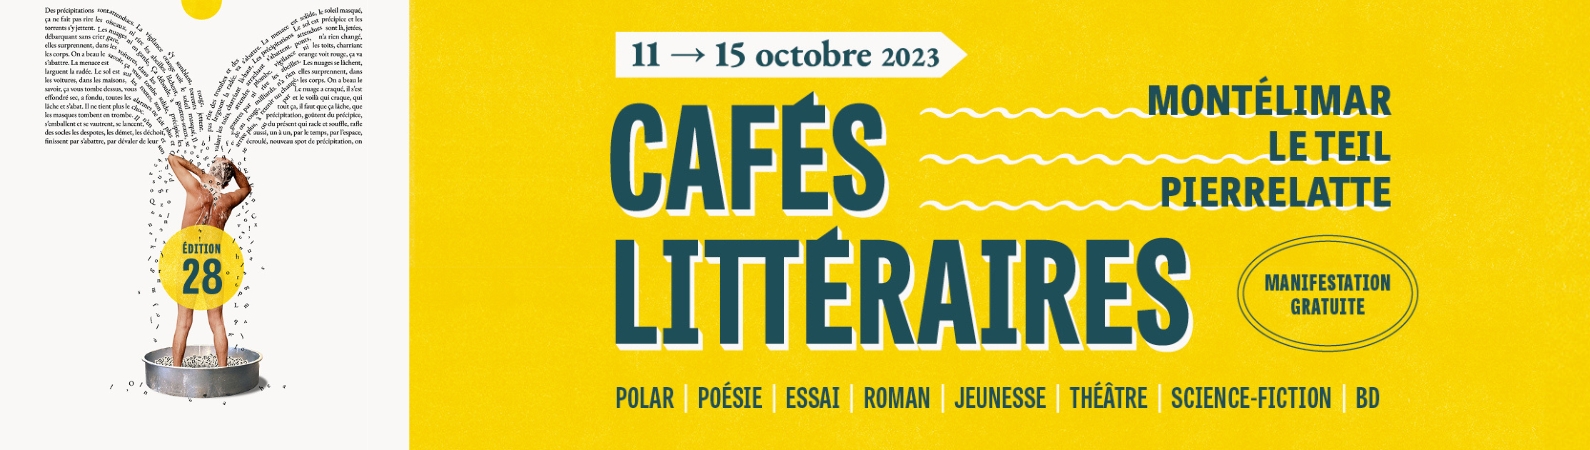 Découvrez le programme des Cafés littéraires de Montélimar du 11 au 15 octobre 2023 - nouvelle fenêtre